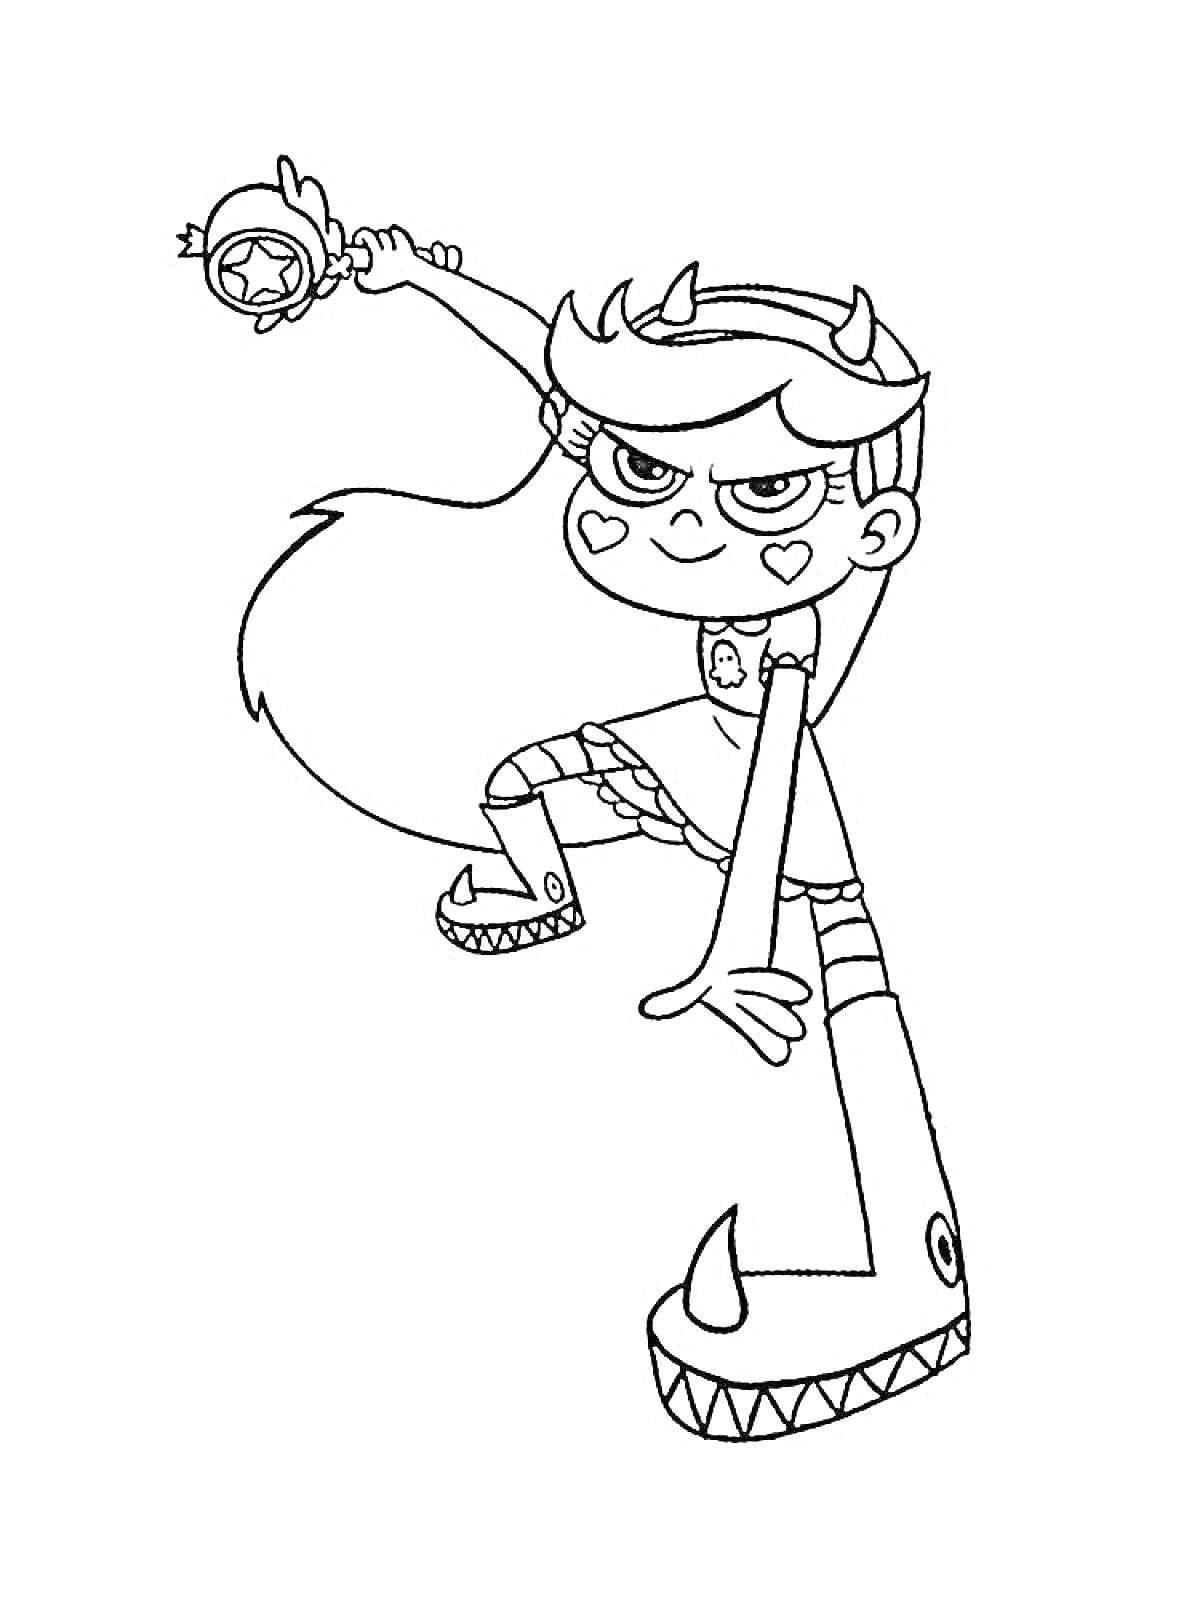 Раскраска Девочка с рогами держит волшебную палочку в прыжке.